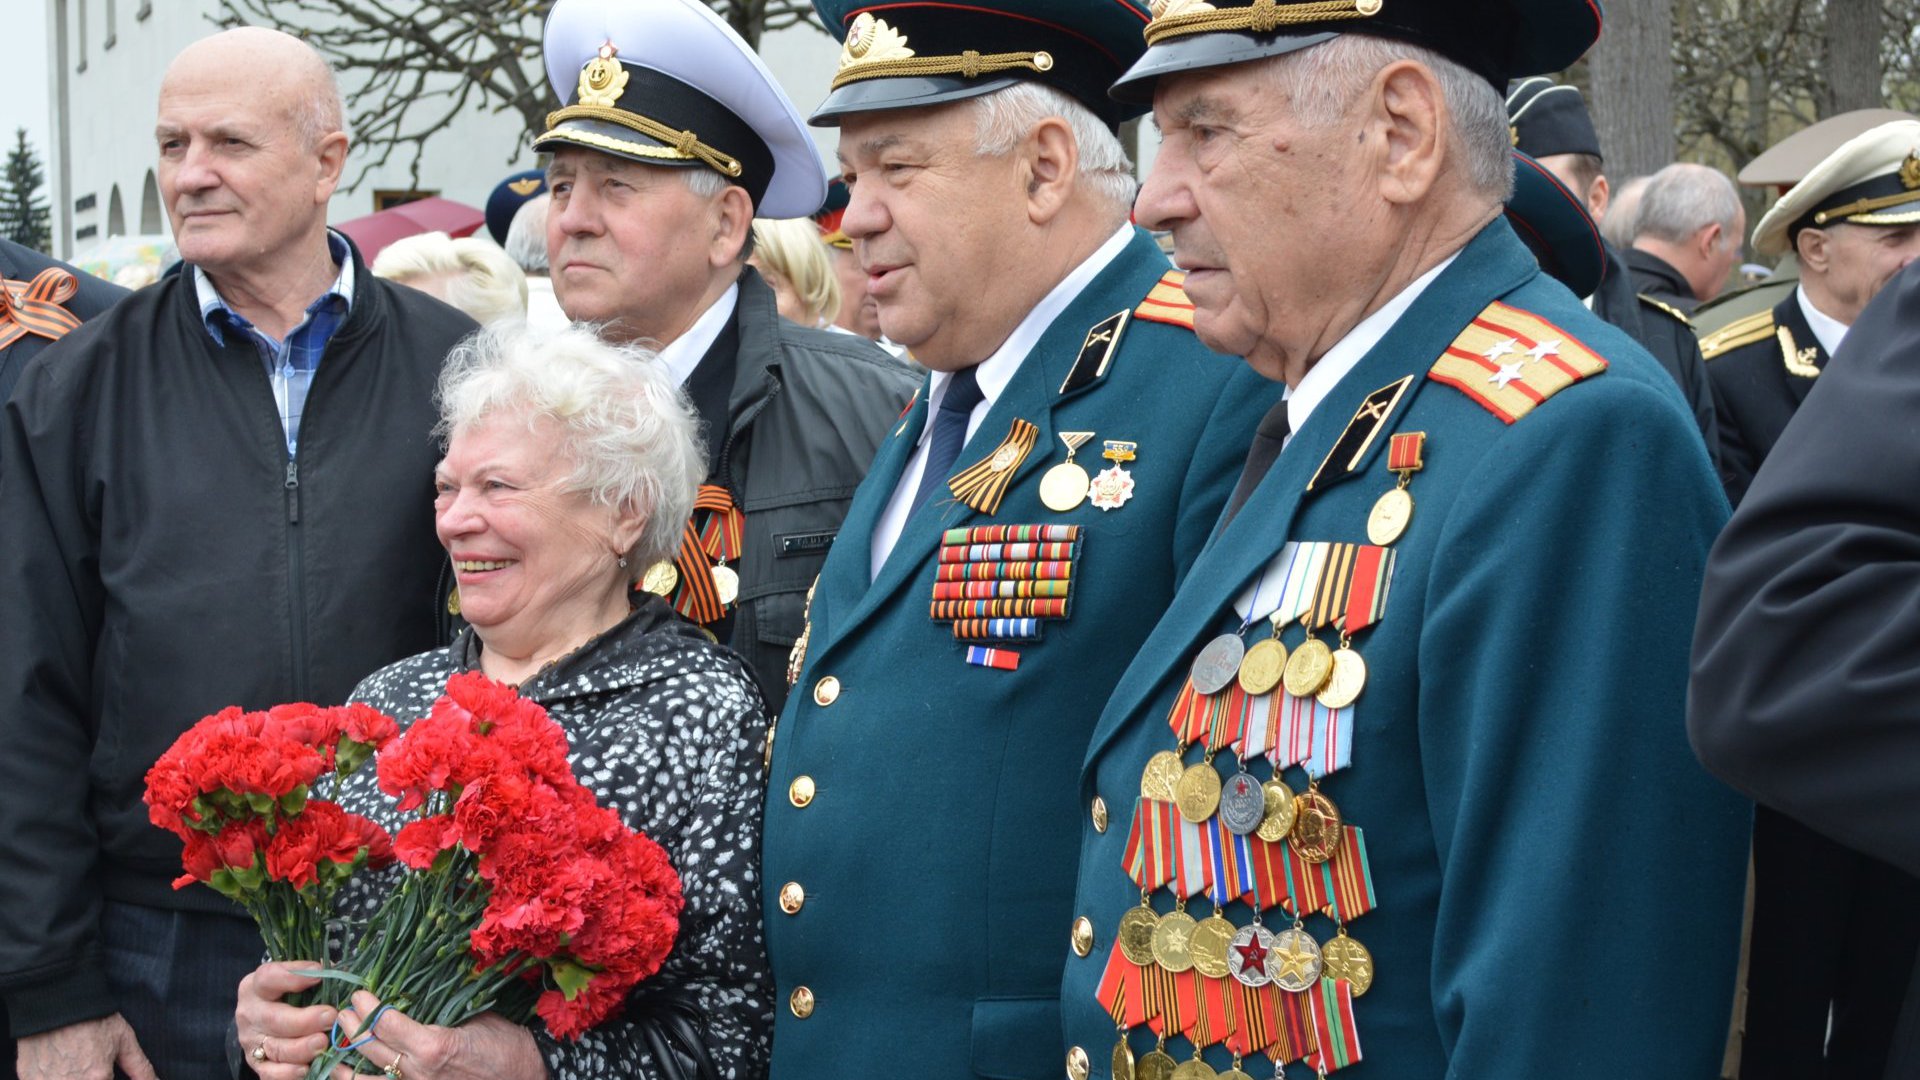 Контрольно-счетная палата Санкт-Петербурга приняла участие в торжественно-траурной церемонии, посвященной 70-летию Победы в Великой Отечественной войне